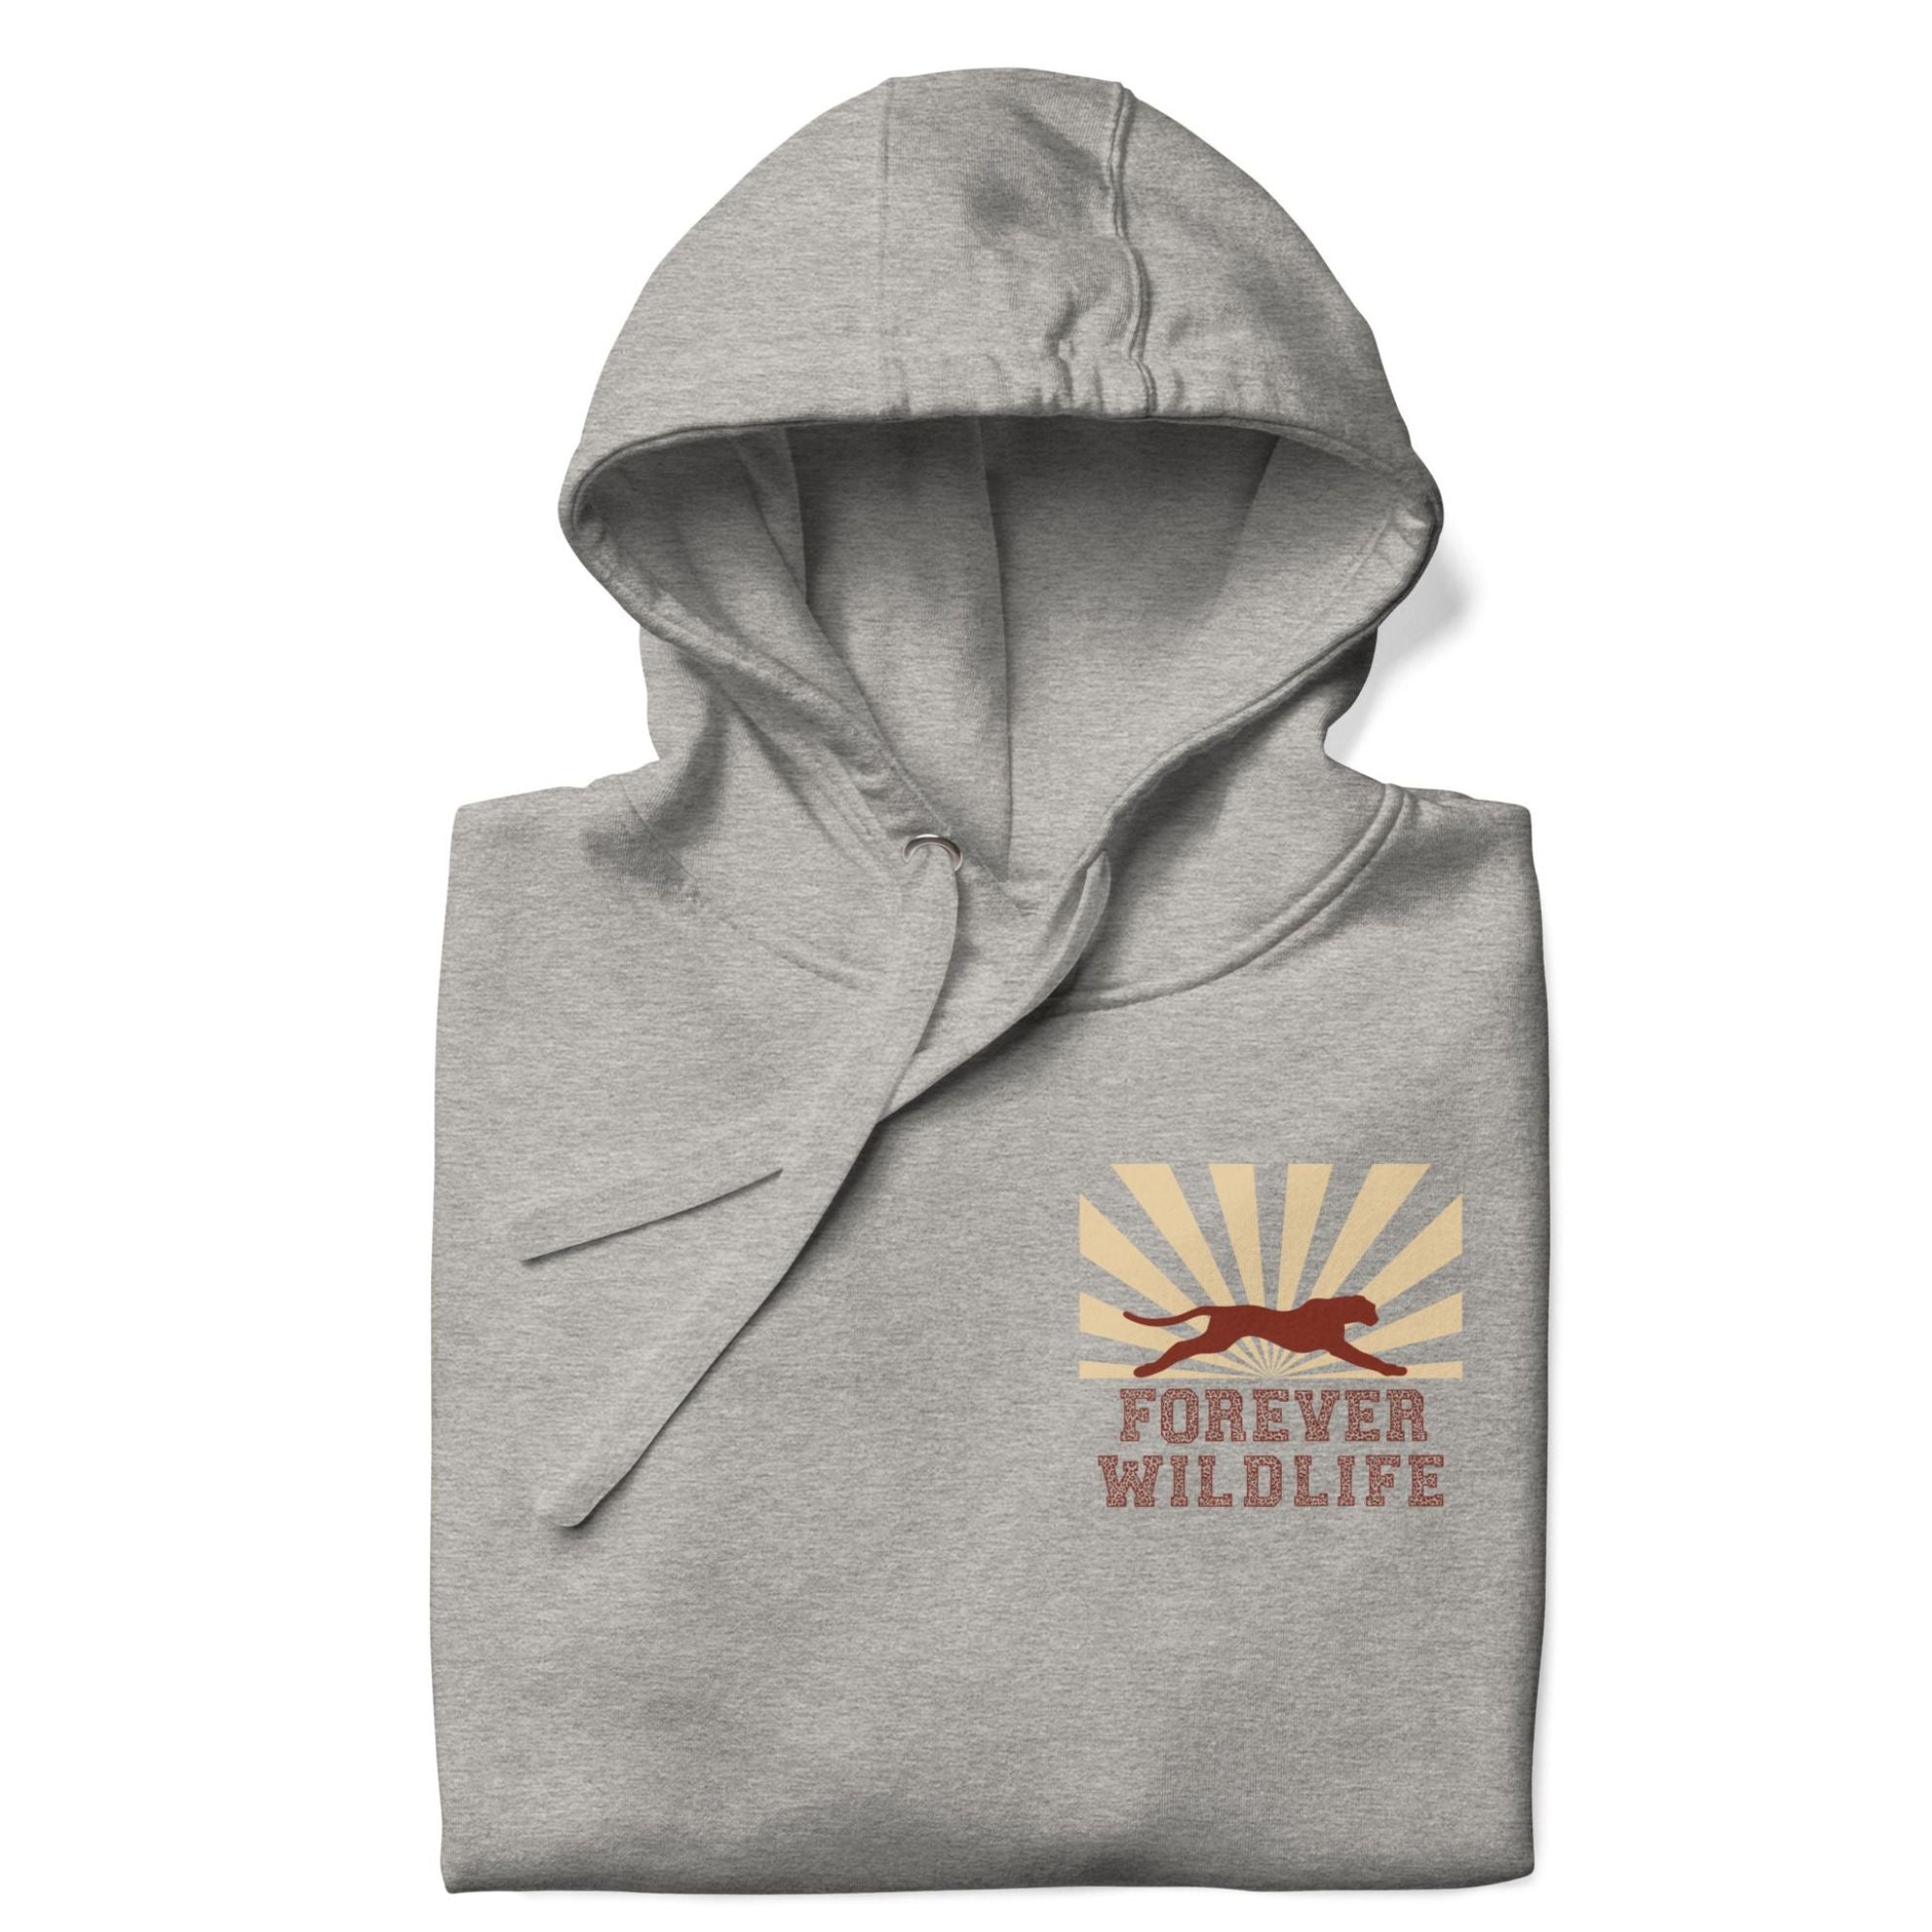 Cheetah Hoodie, beautiful grey Cheetah hoodie with cheetah graphics made by Forever Wildlife Wildlife hoodies.